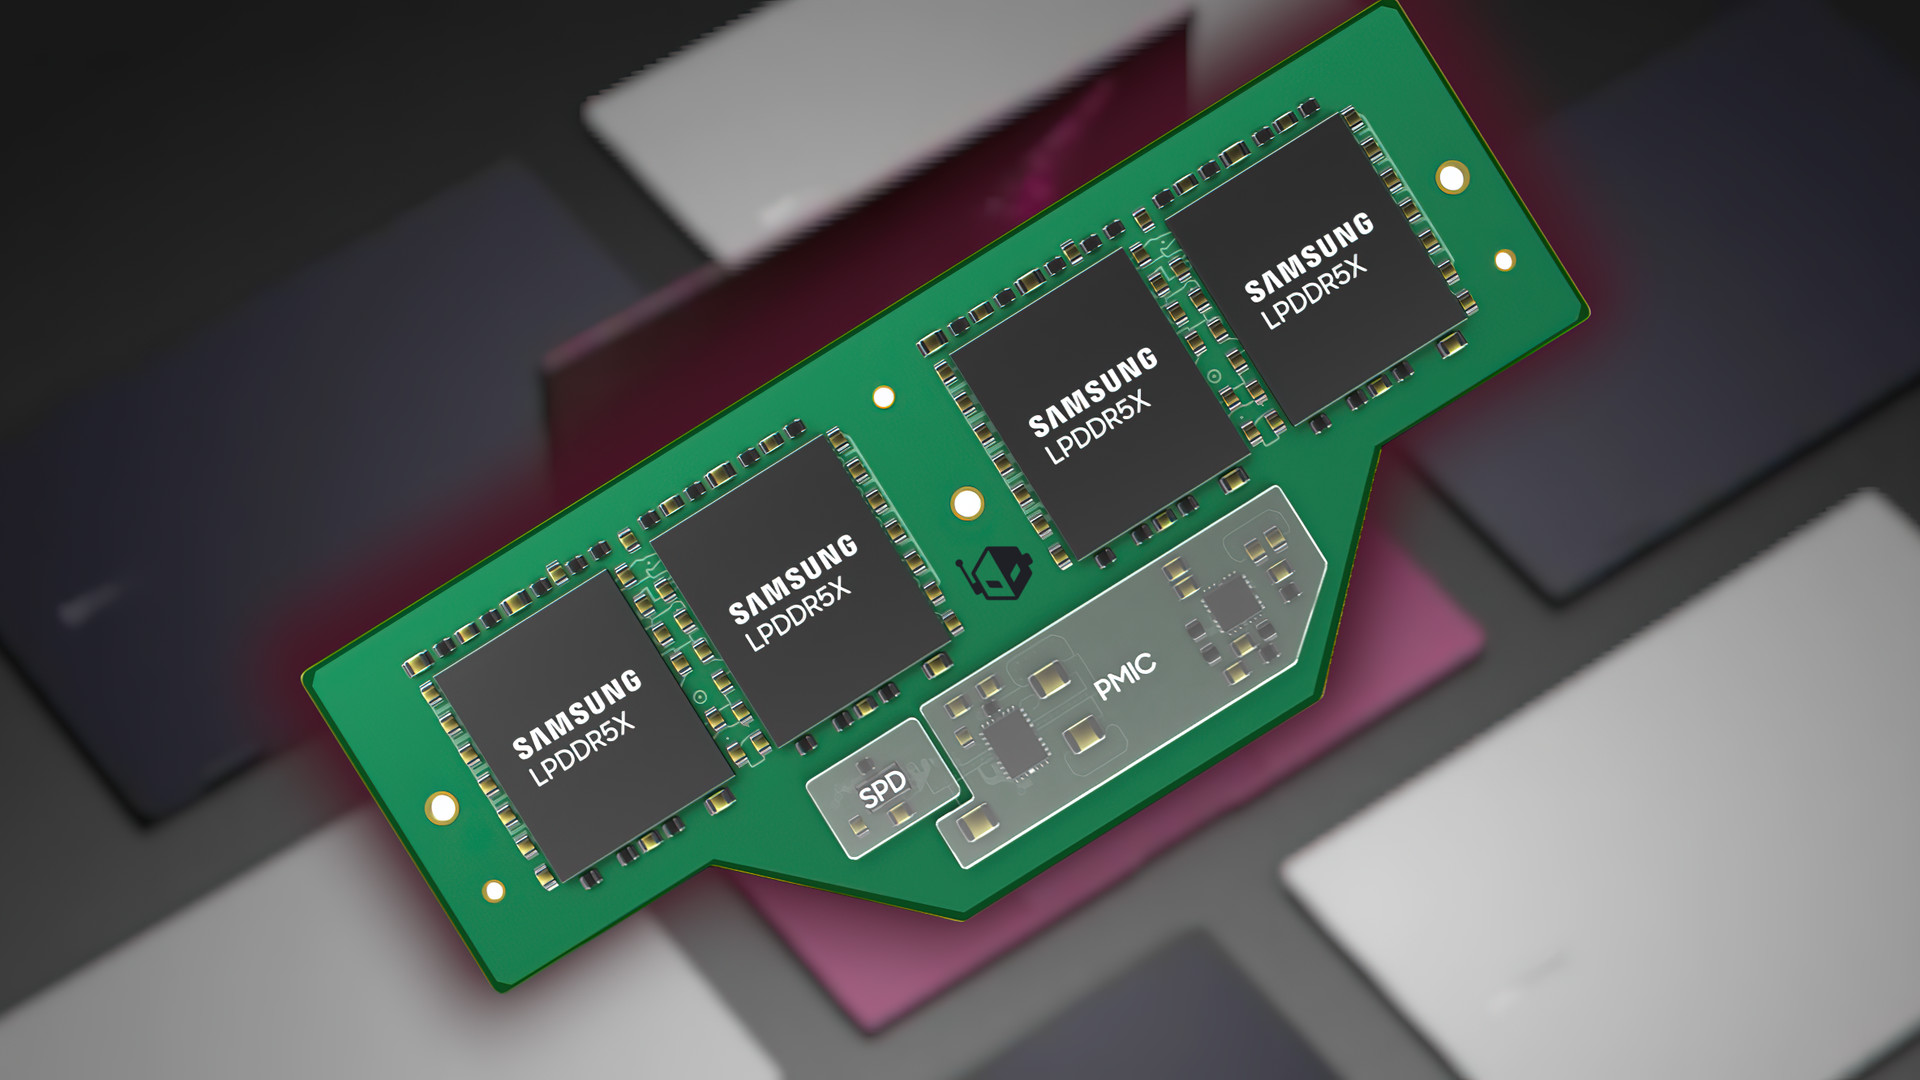 Plus petit, plus efficace, le nouveau format de RAM Samsung veut mettre la SODIMM à la porte